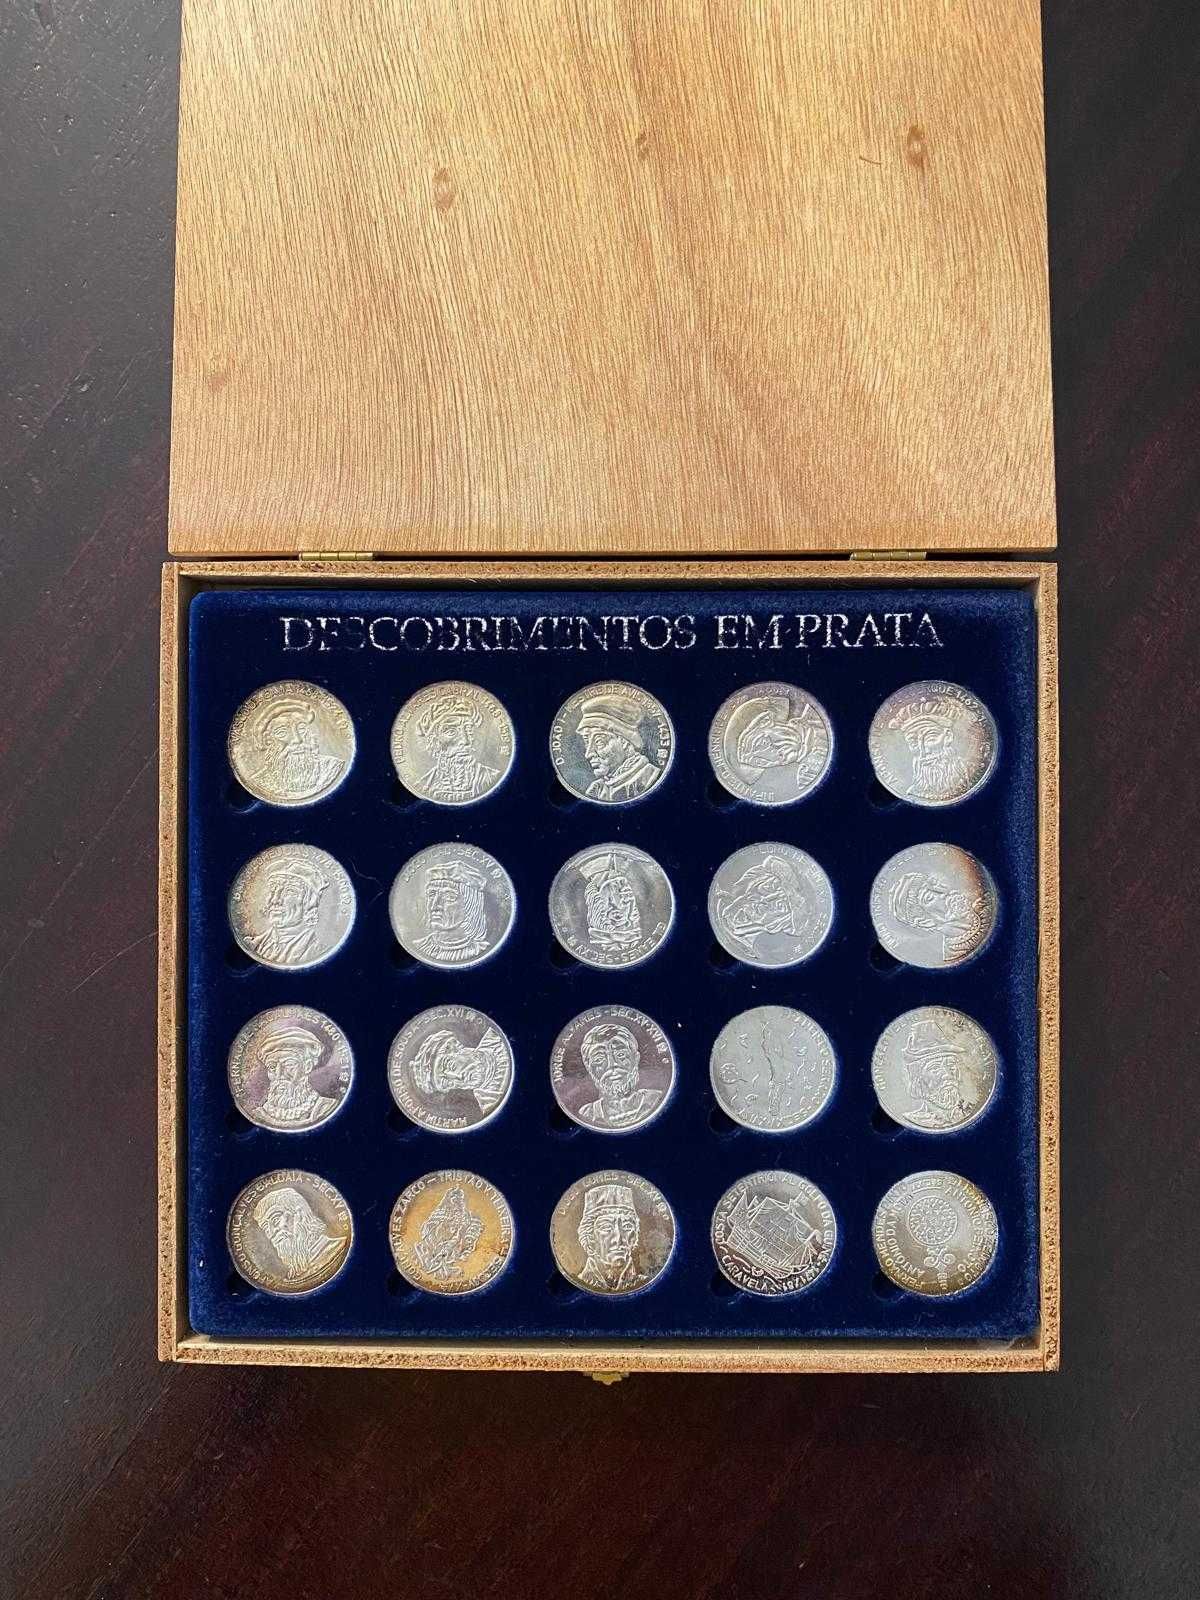 Caixa comemorativa de moedas de prata do JN (1999)